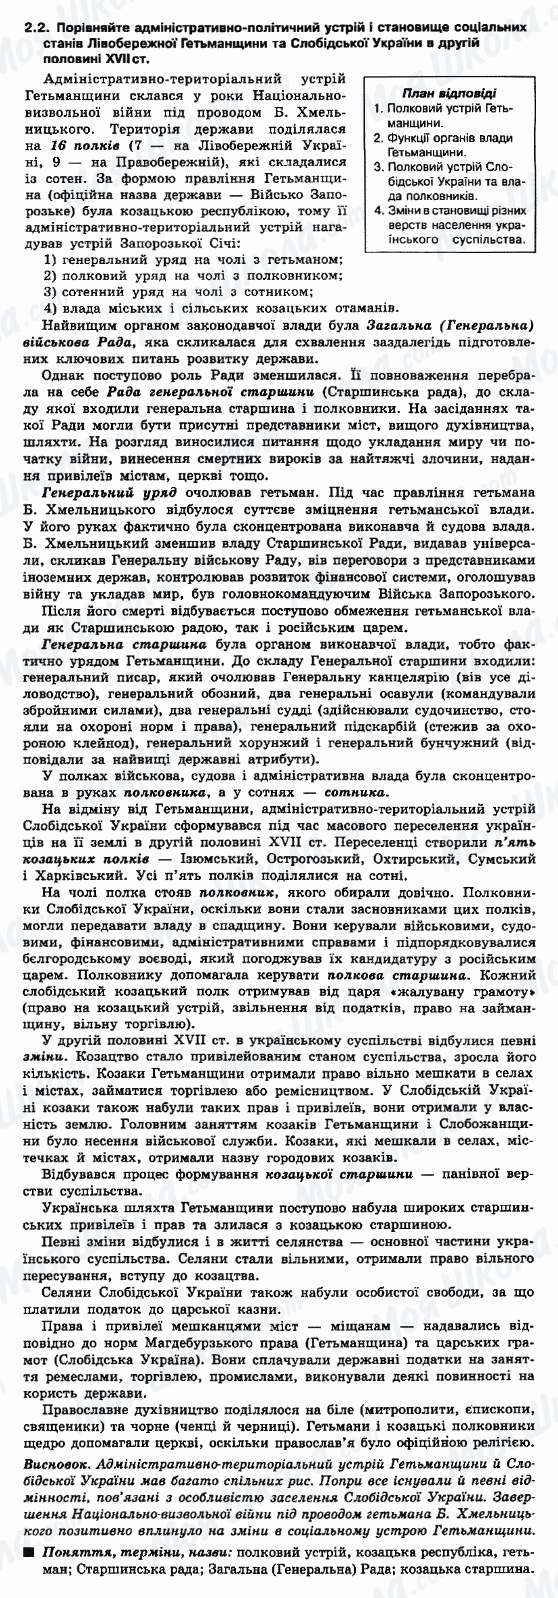 ДПА История Украины 9 класс страница 2.2